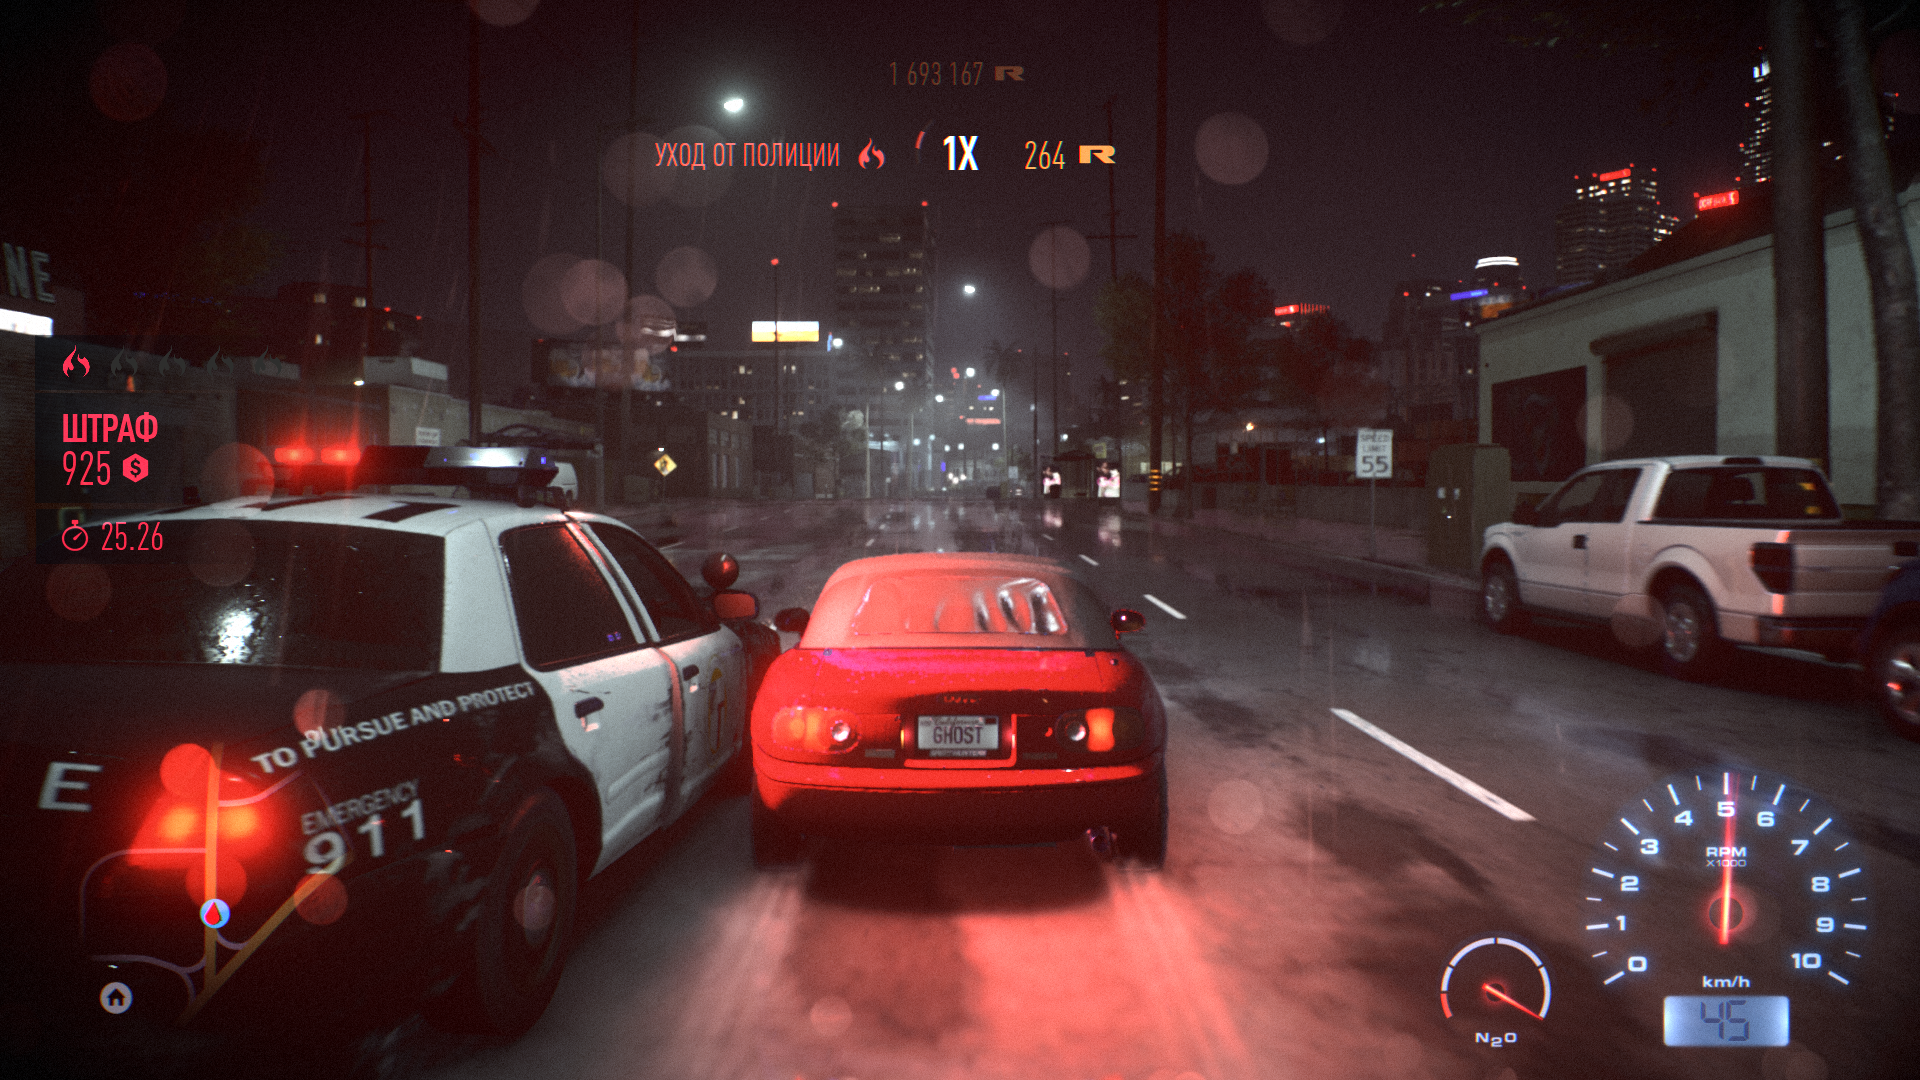 Фары спид ап. Need for Speed 2015 обзор. Дизайнер игр нит фор спидс. Самая новая игра нит Фос СПИД.